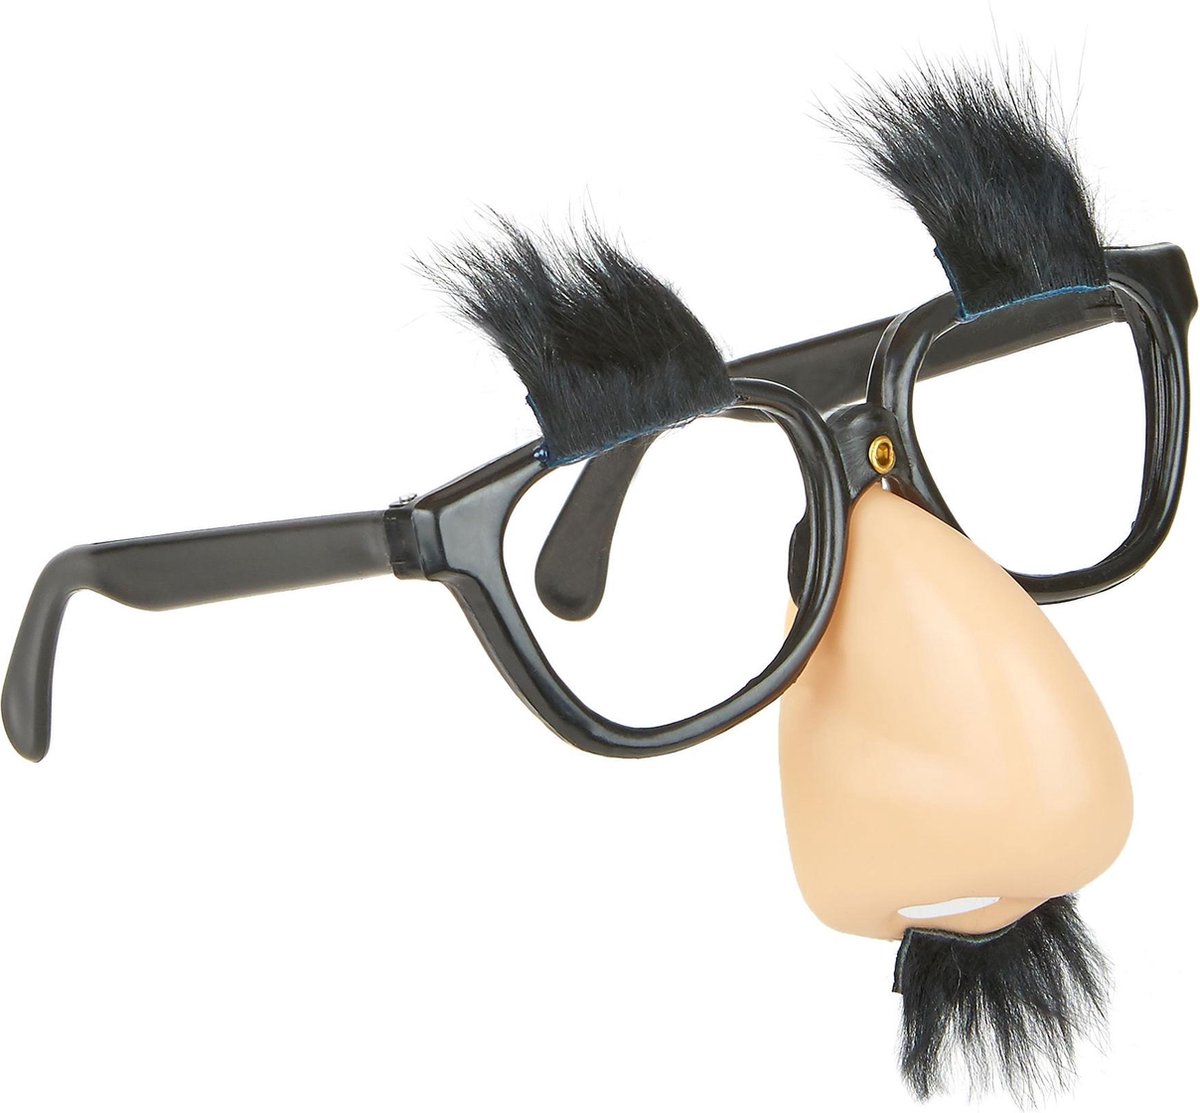 Voorkeur Somber wang BOLAND BV - Humoristische bril neus met snor - Accessoires > Brillen |  bol.com